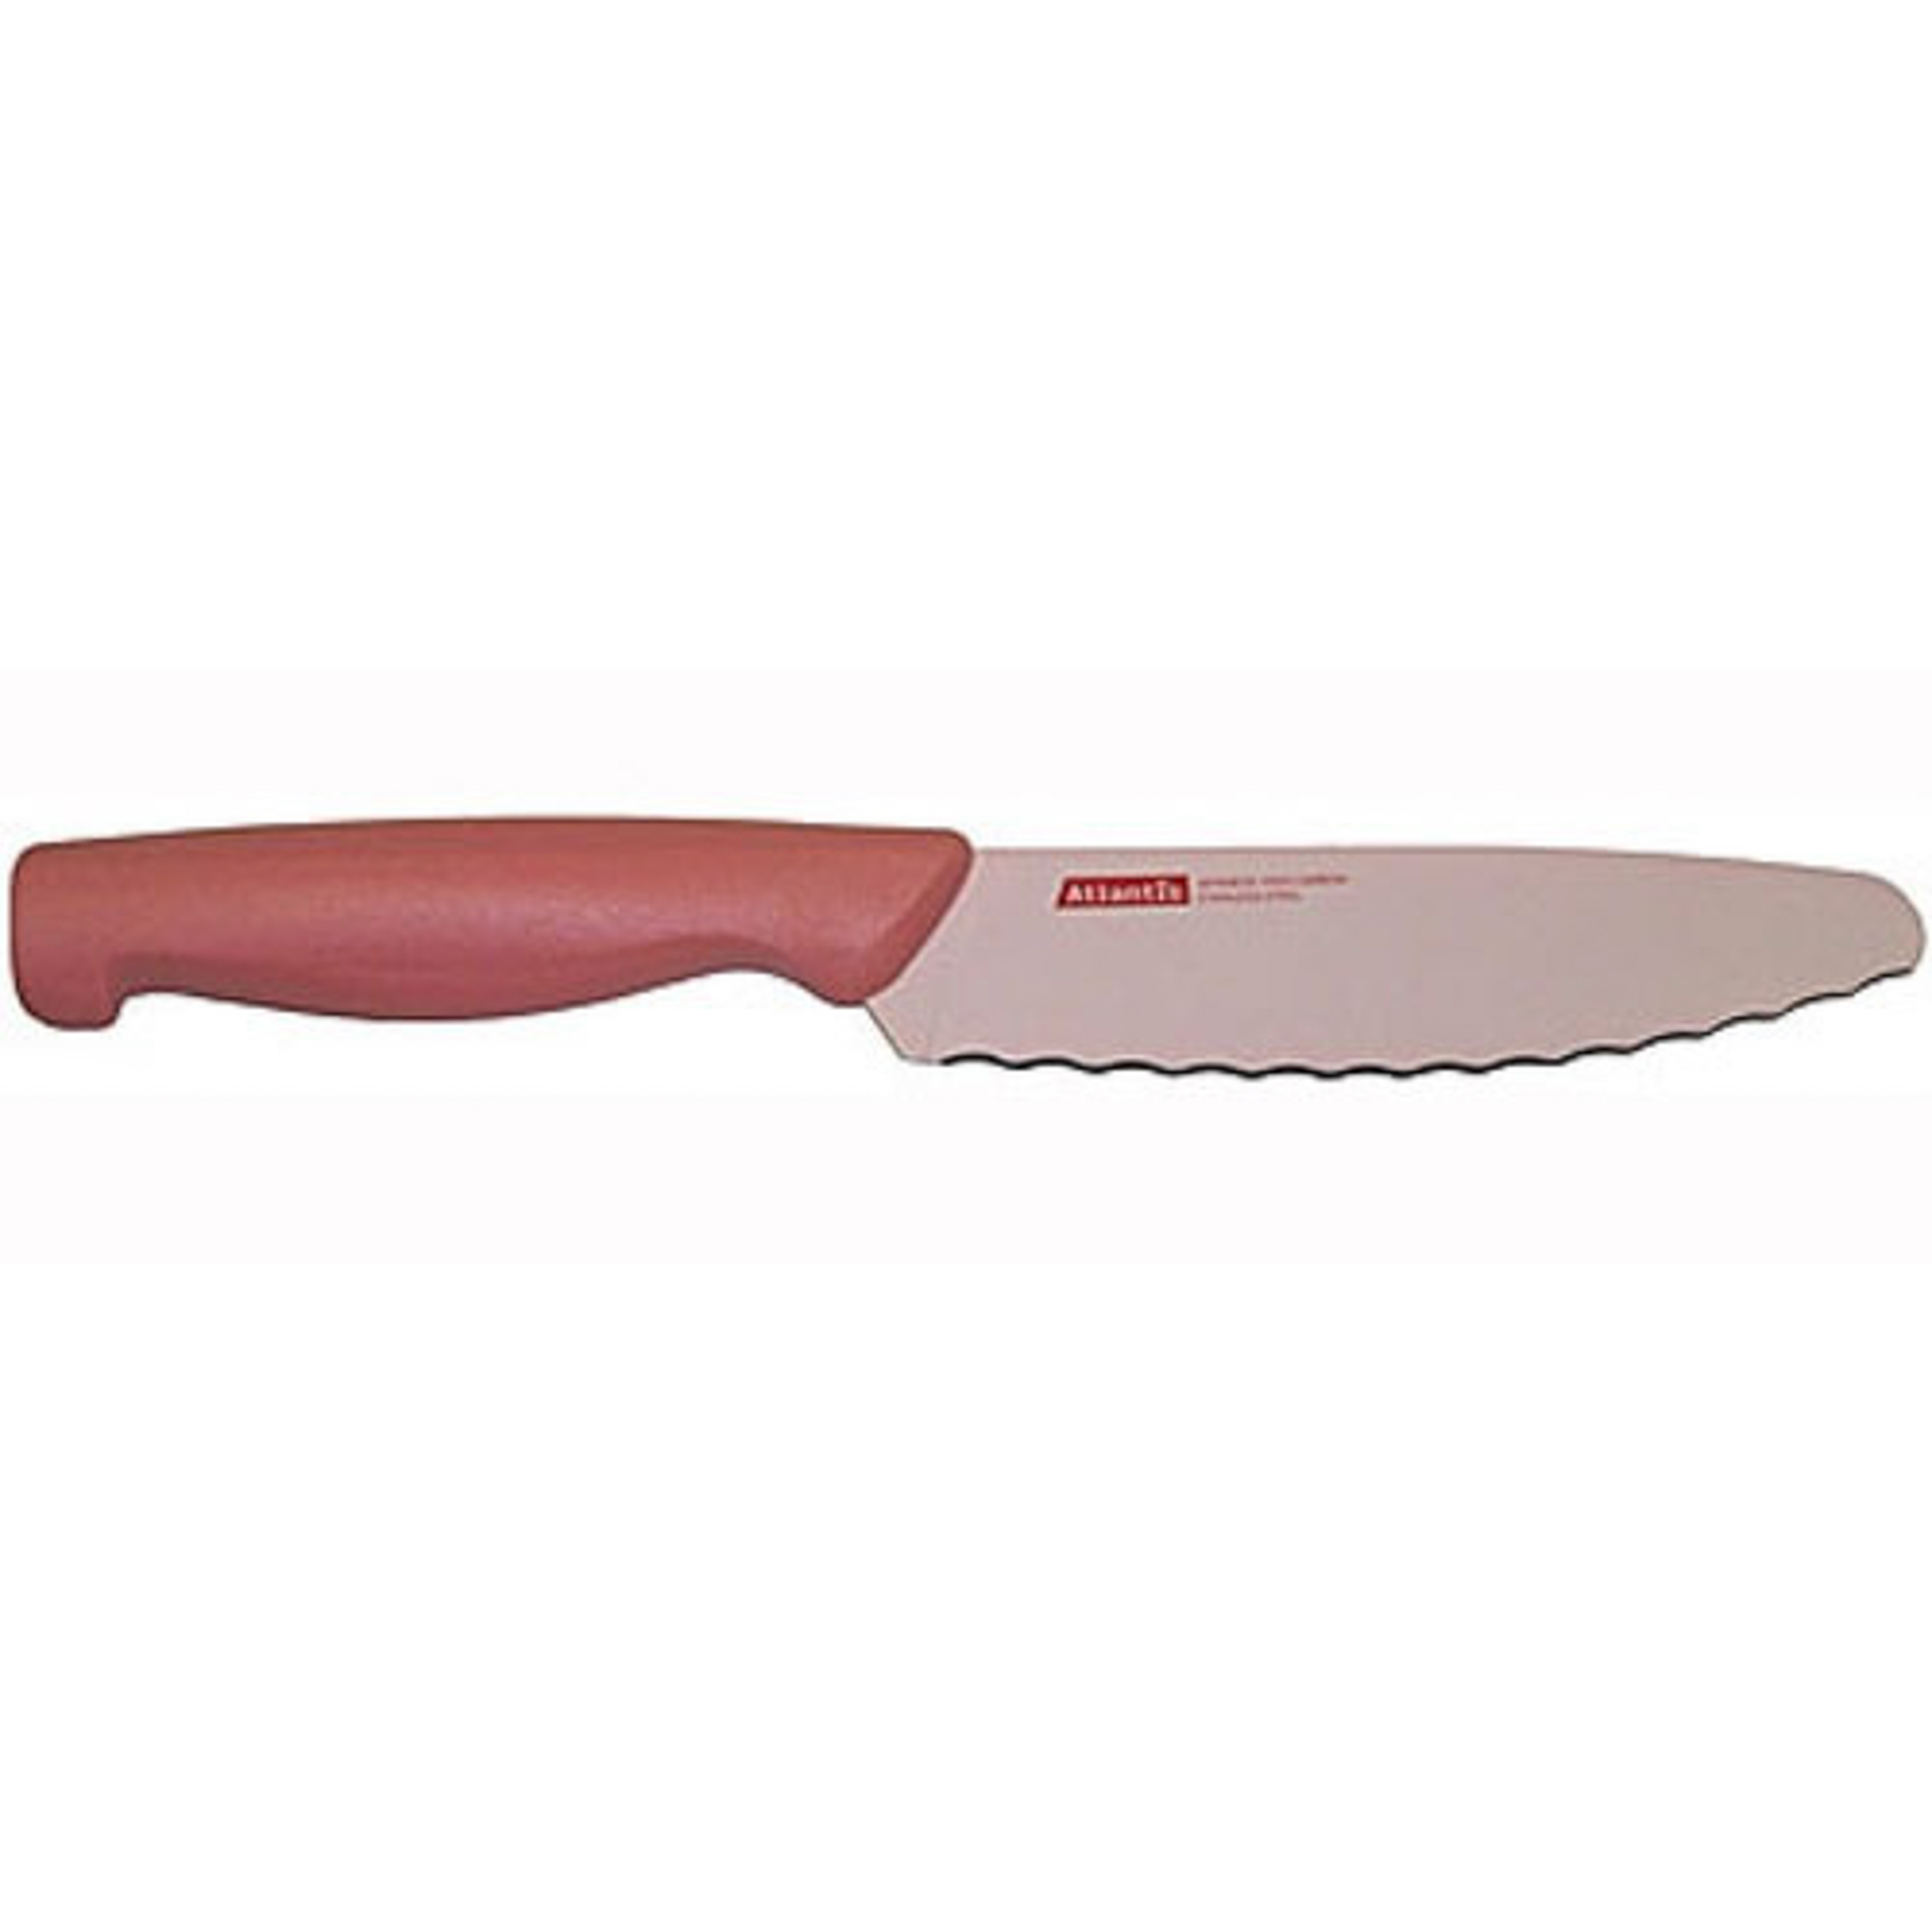 Нож универсальный 15см розовый Atlantis нож atlantis 24706 sk 15см обвалочный